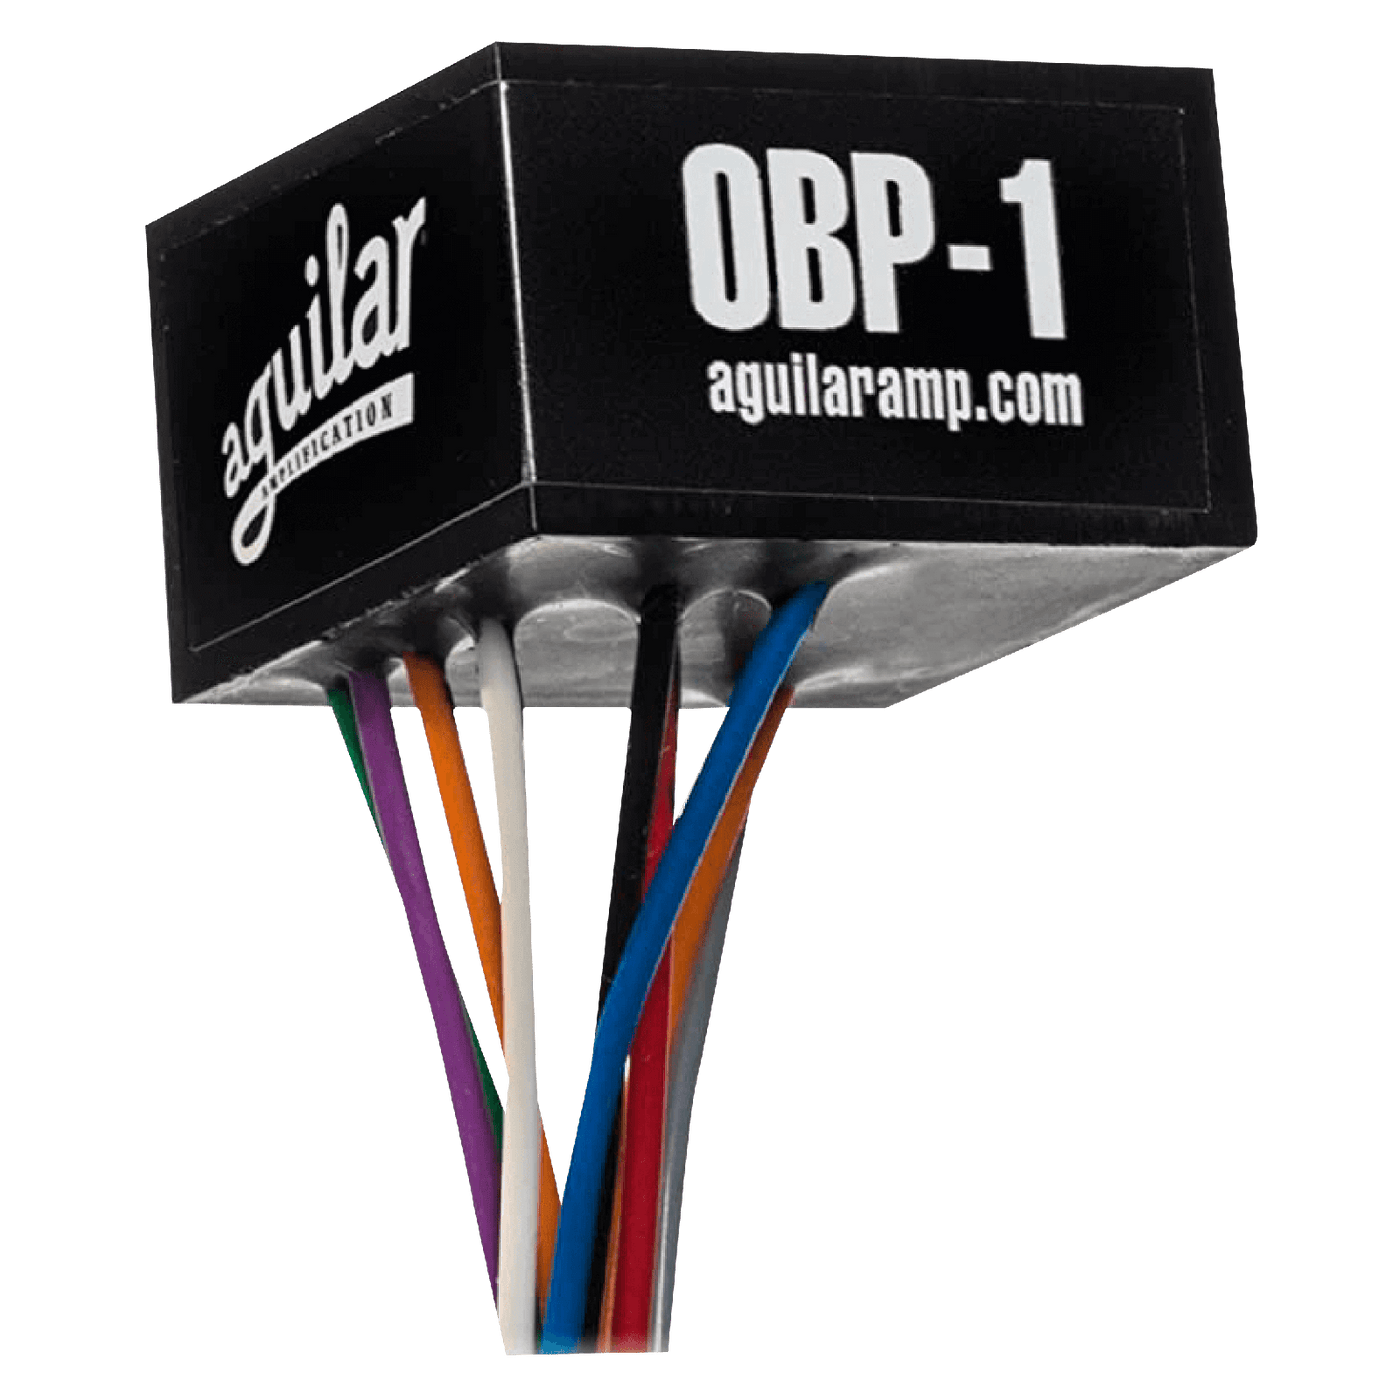 Aguilar OBP-1 - El diseño de solo boost del OBP-1 le brinda los beneficios de modelado de tono de la electrónica activa sin perder el sonido inherente del instrumento. El circuito discreto totalmente FET del OBP-1 presenta hasta 18 dB de impulso a 40 Hz y